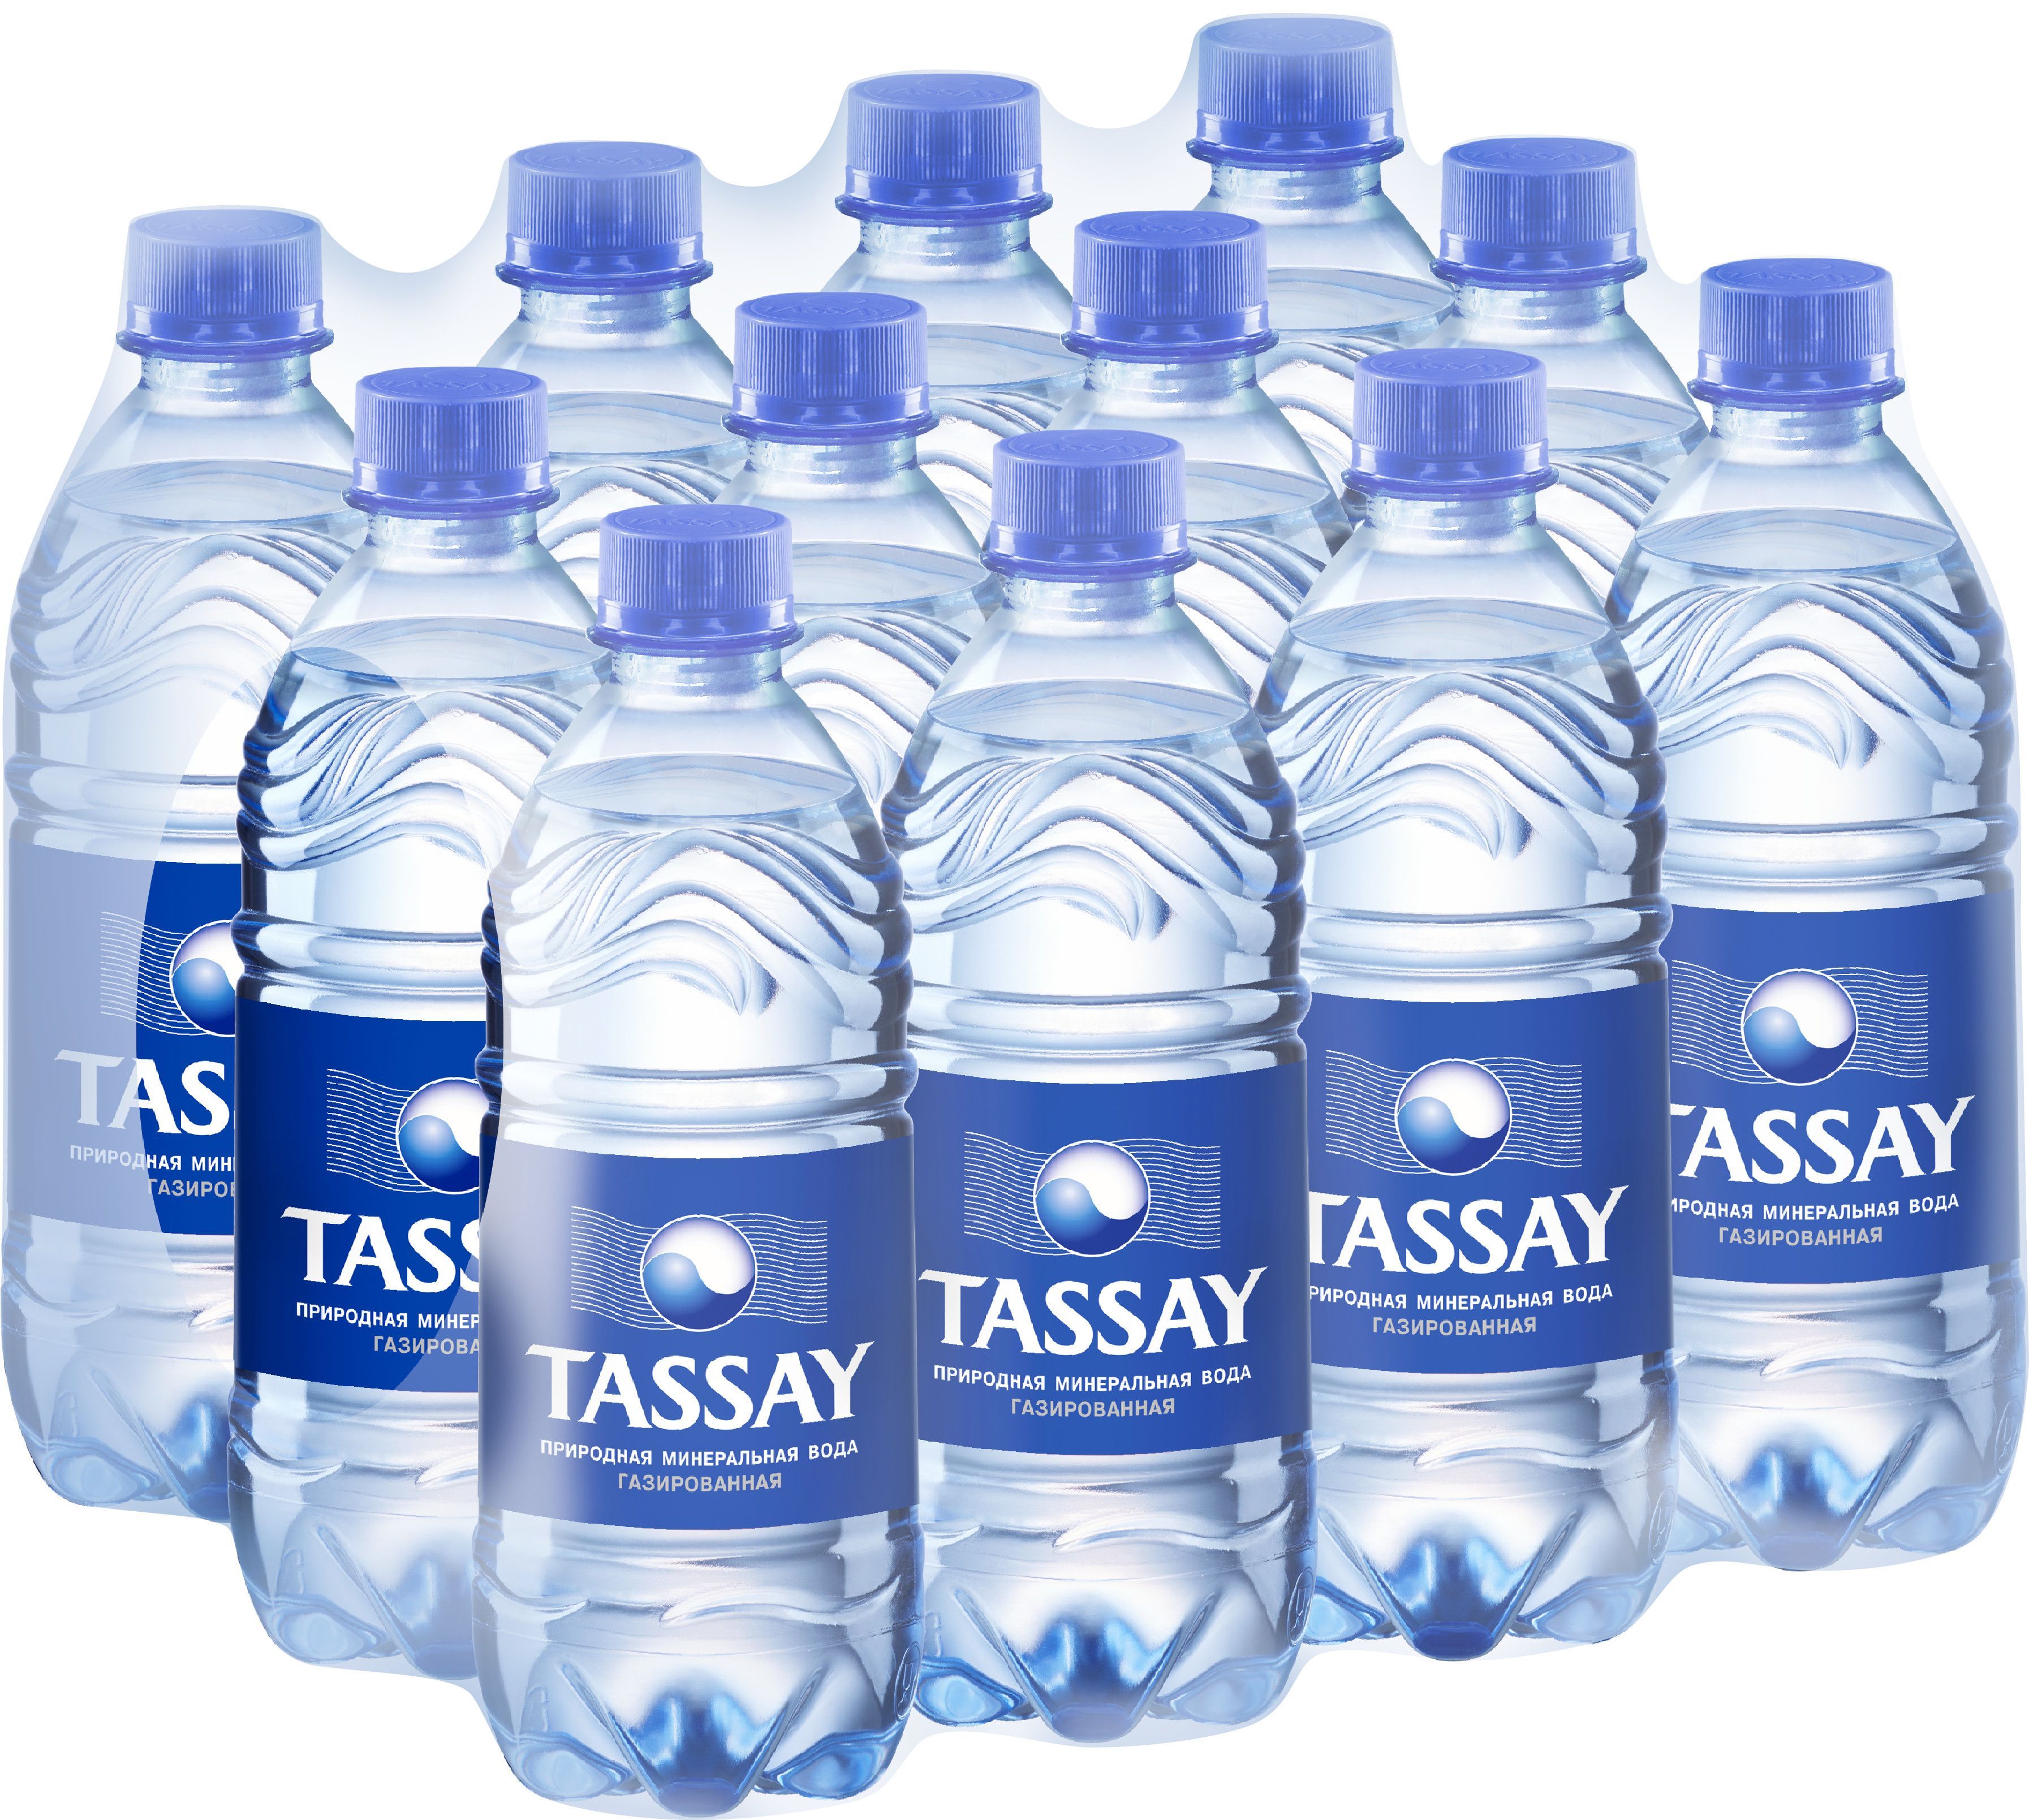 Вода 0.3 л. Минеральная вода Tassay. Тассай 0.5 ПЭТ. Tassay вода 0.5. Тассай вода ПЭТ 0.5.